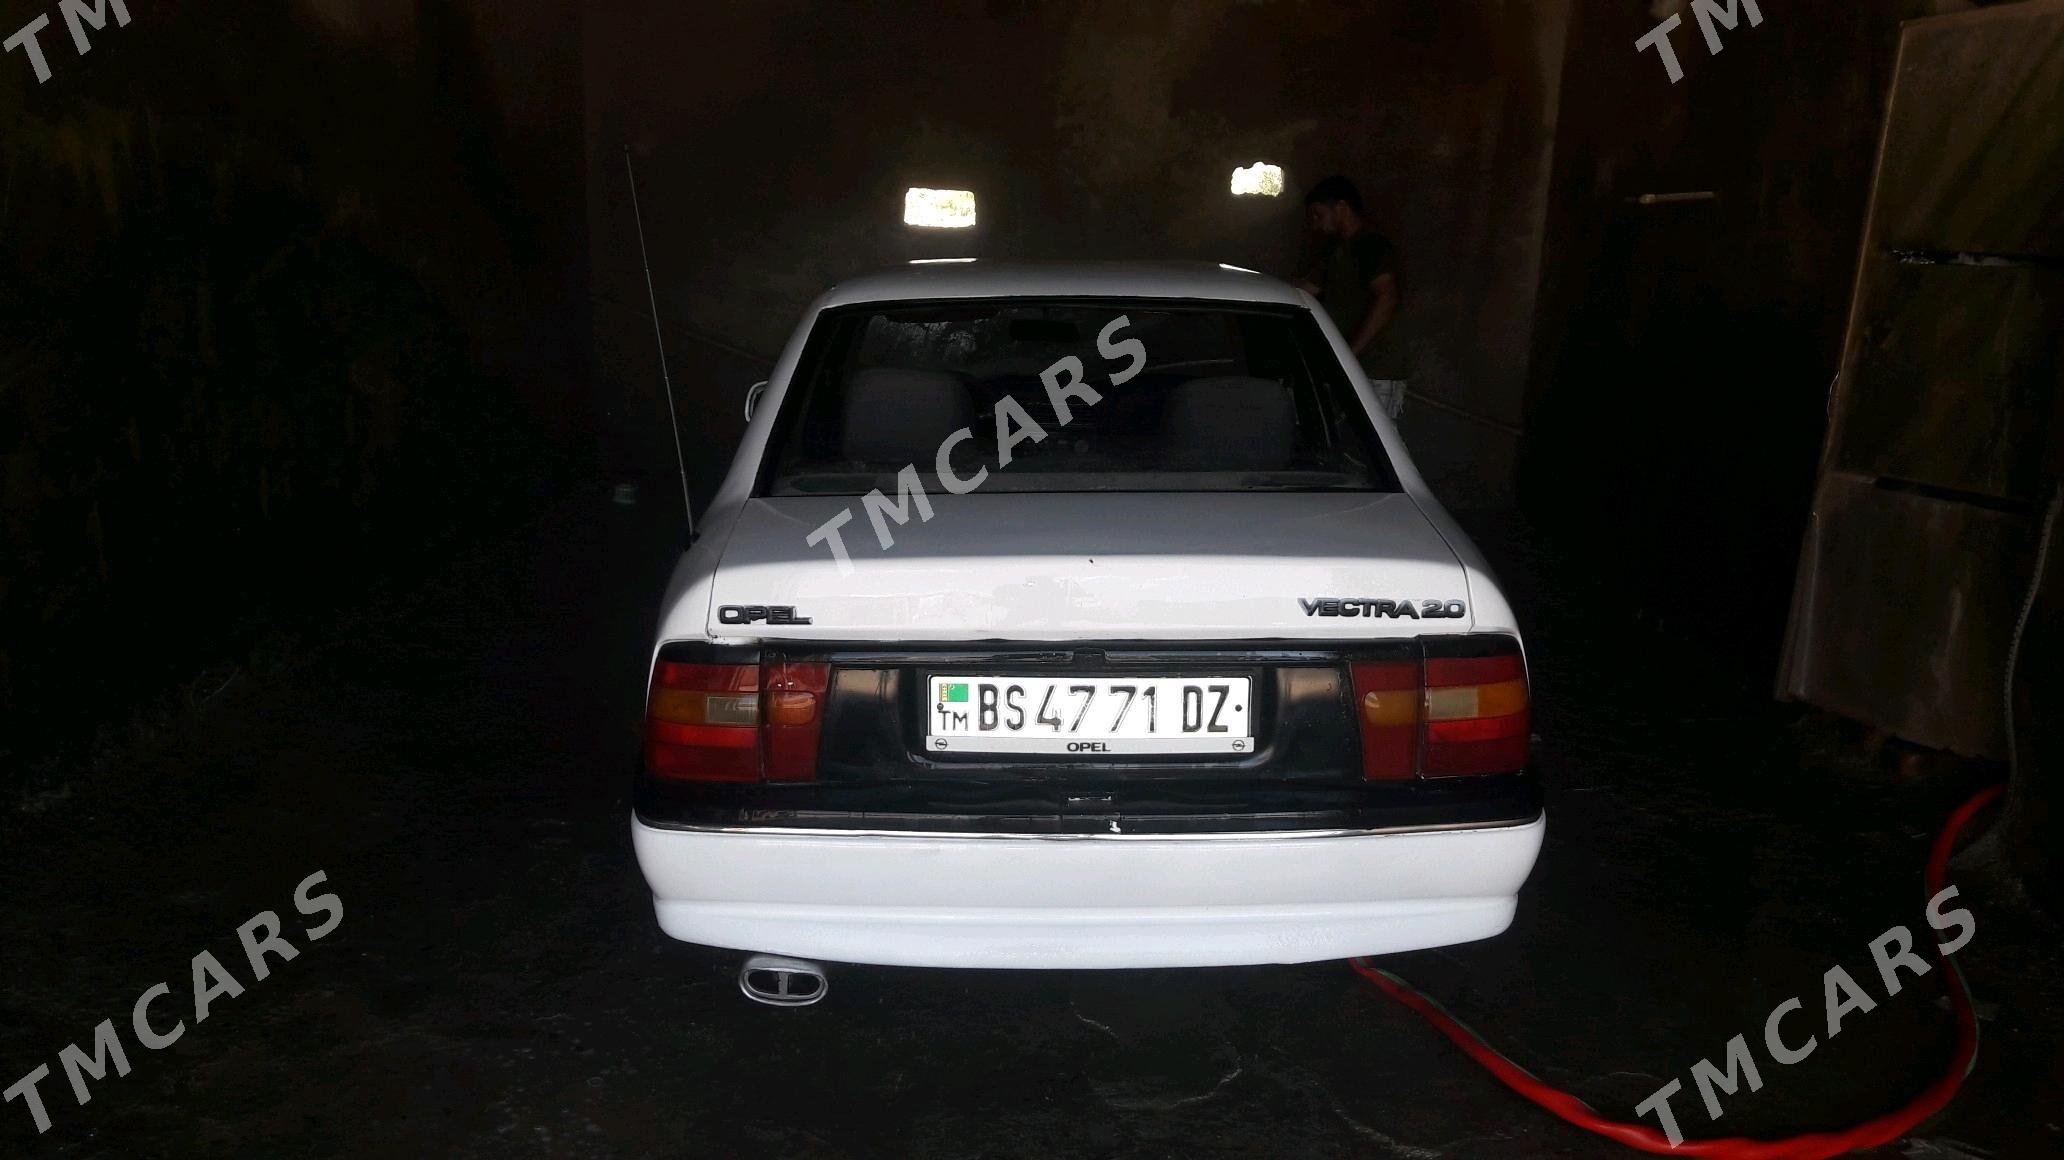 Opel Vectra 1991 - 22 000 TMT - Türkmenbaşy etr. - img 4